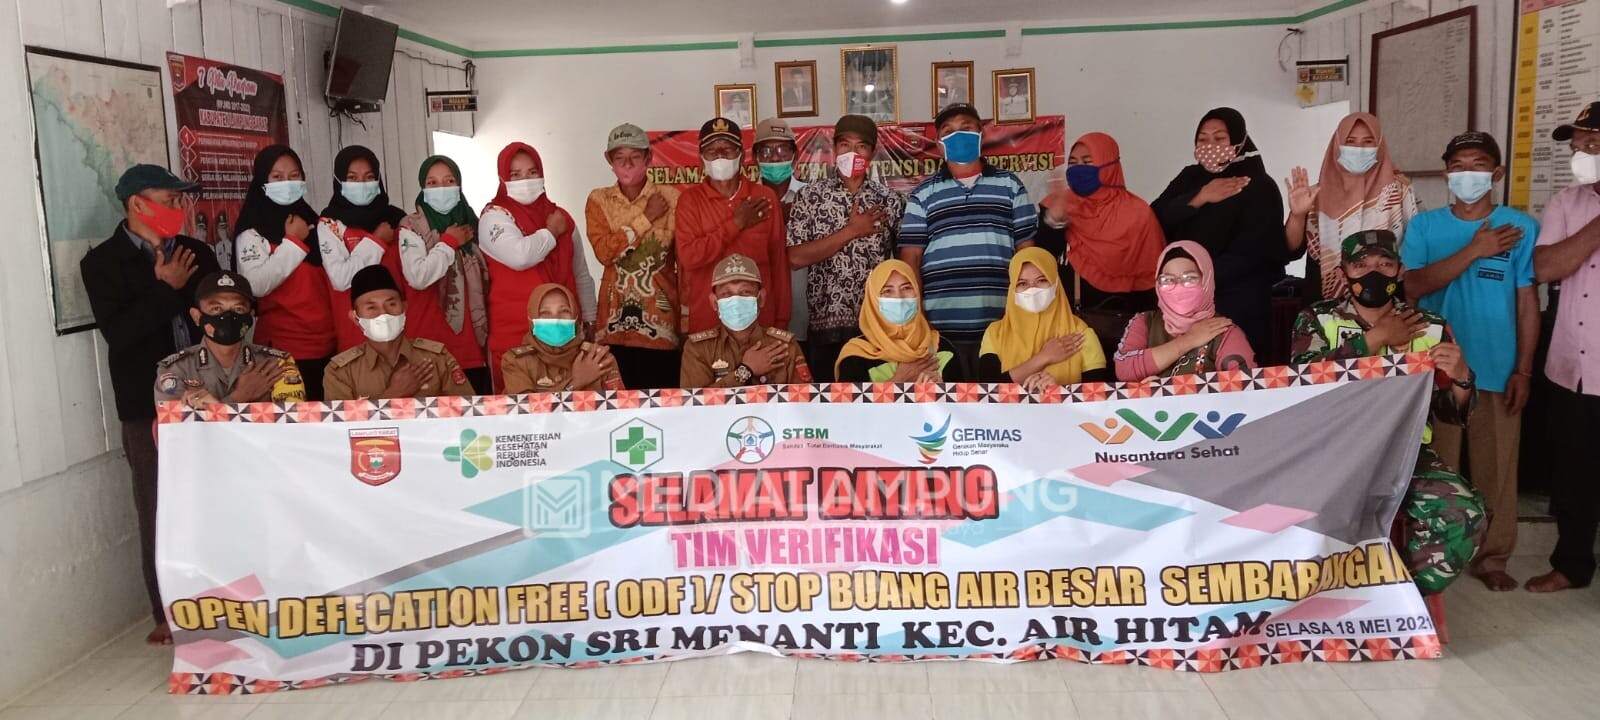 Sembilan Pekon Susul Semarangjaya Bawa Kecamatan Airhitam Lolos ODF 